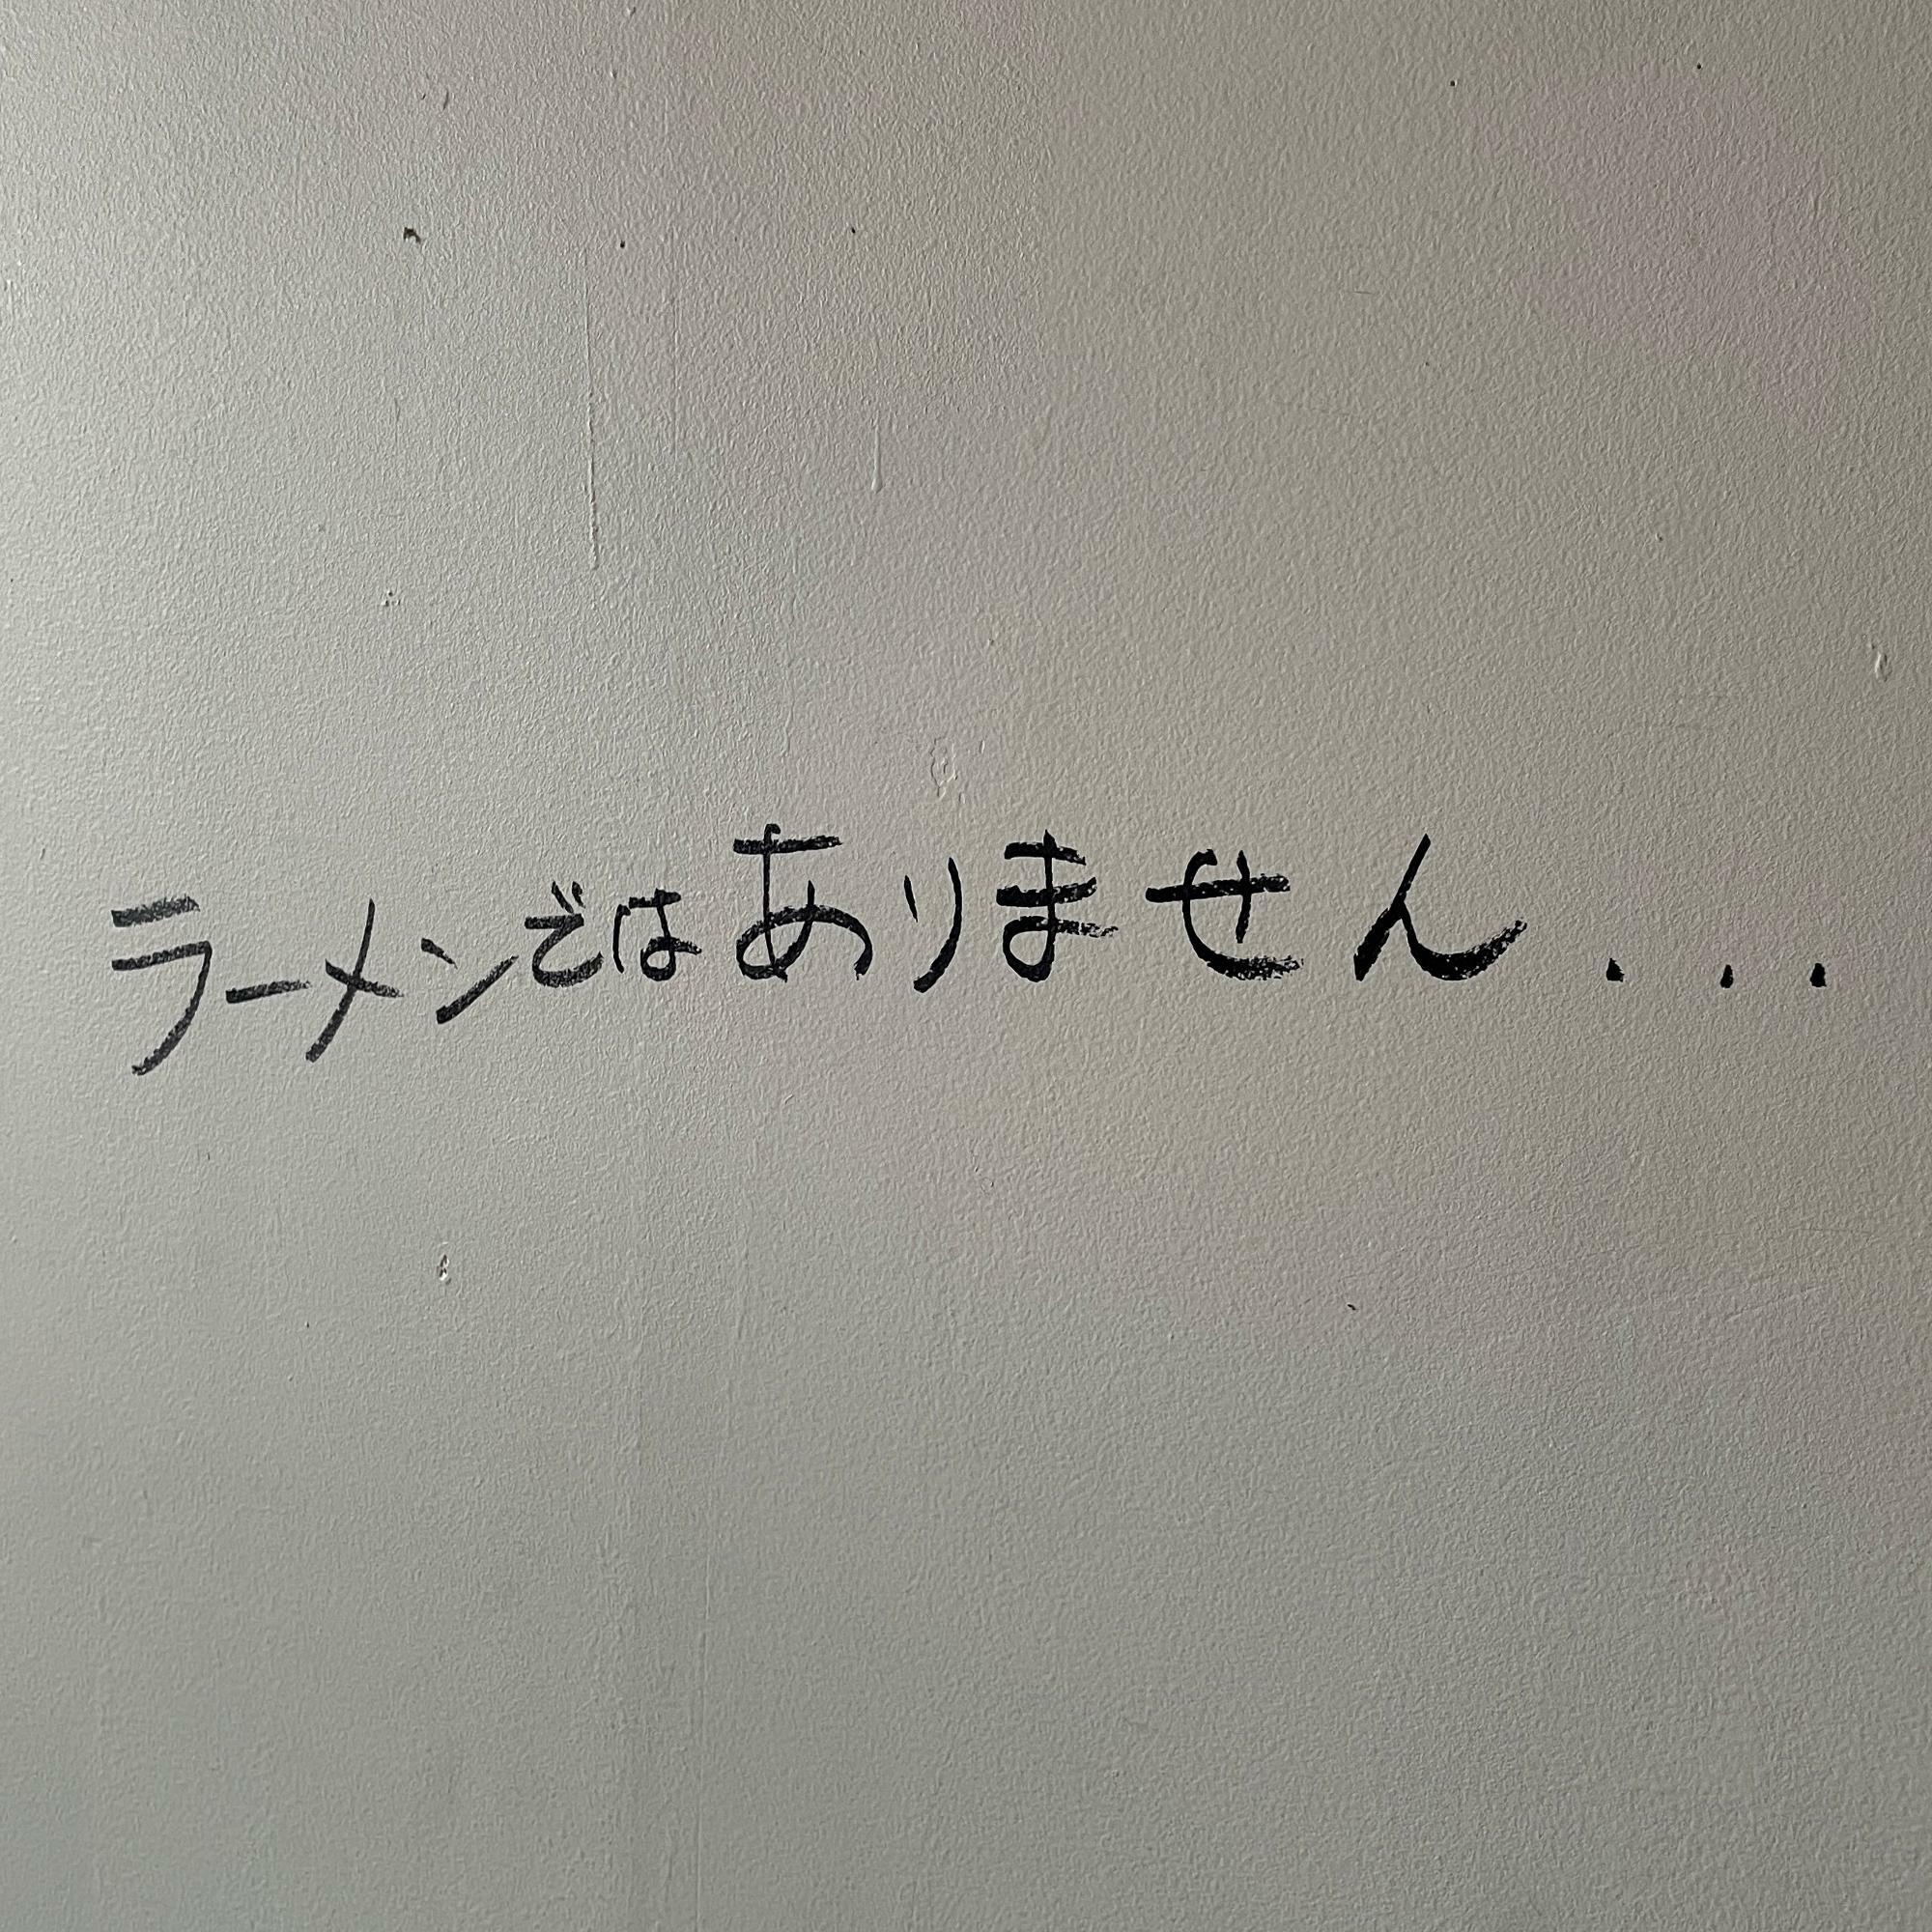 壁にはこんな文字が書かれていました。細かいことは気にせずに行きましょう。